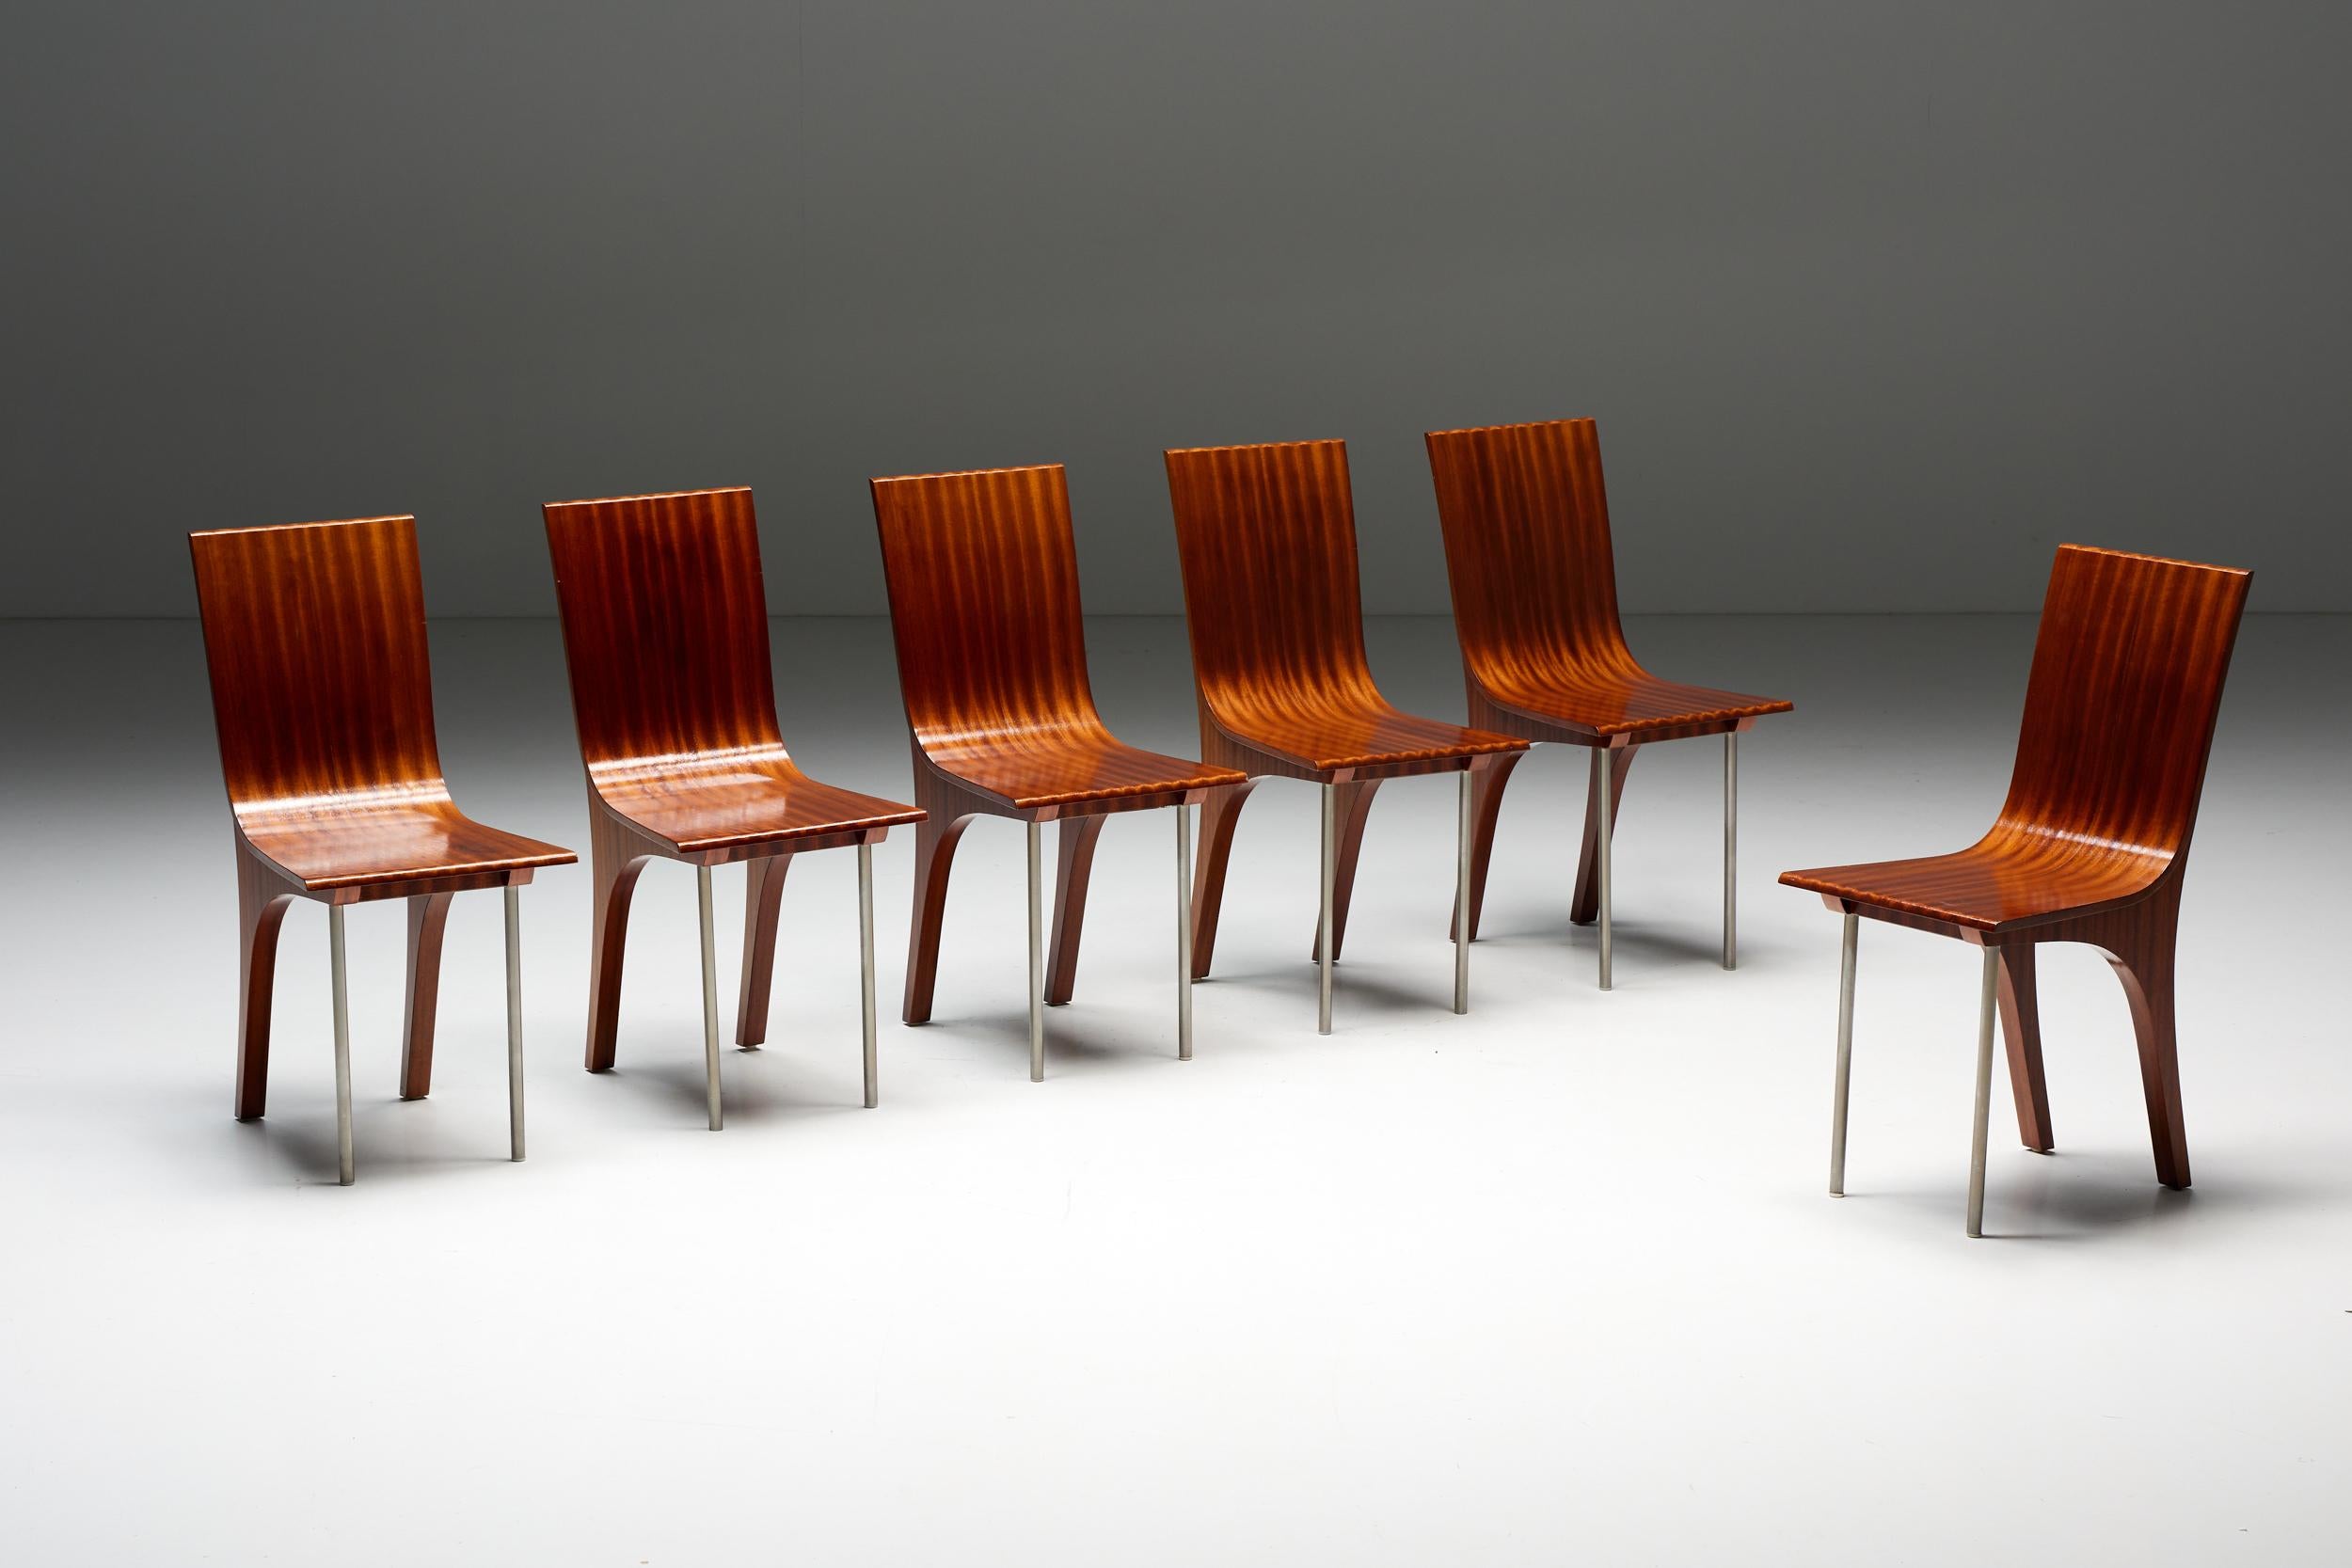 Postmoderne Esszimmerstühle aus Nussbaum, eine stilvolle und moderne Ergänzung für jedes Esszimmer. Diese Stühle zeichnen sich durch ein einzigartiges Design aus, mit geschwungenen Beinen aus hochwertigem Holz wie die Rückenlehne und die Sitzfläche